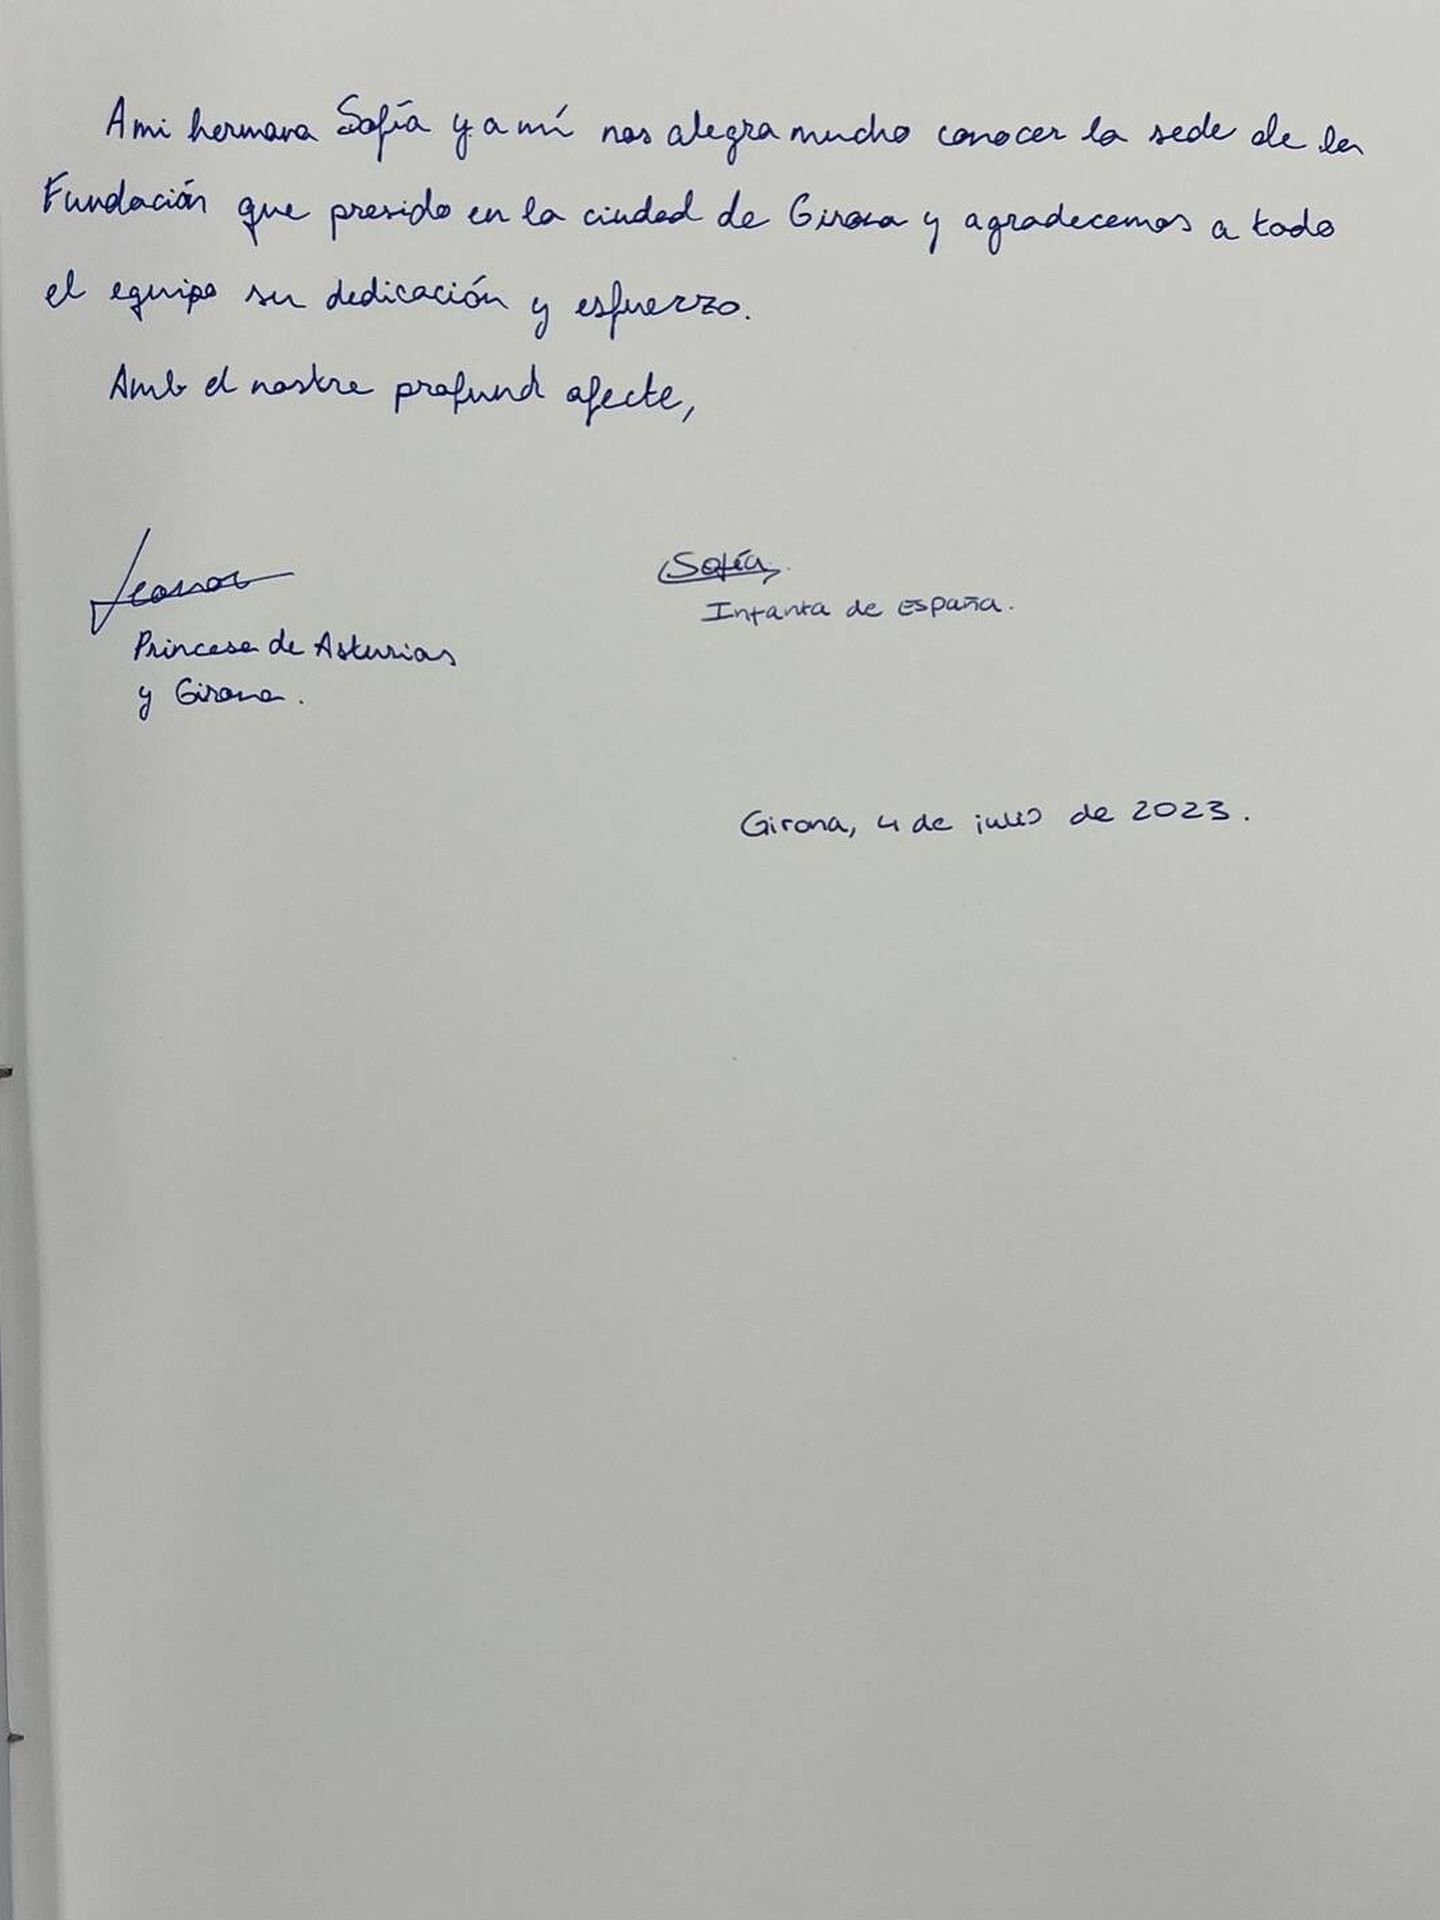 La nota manuscrita de Leonor. (Imagen de la Fundación Princesa de Girona)